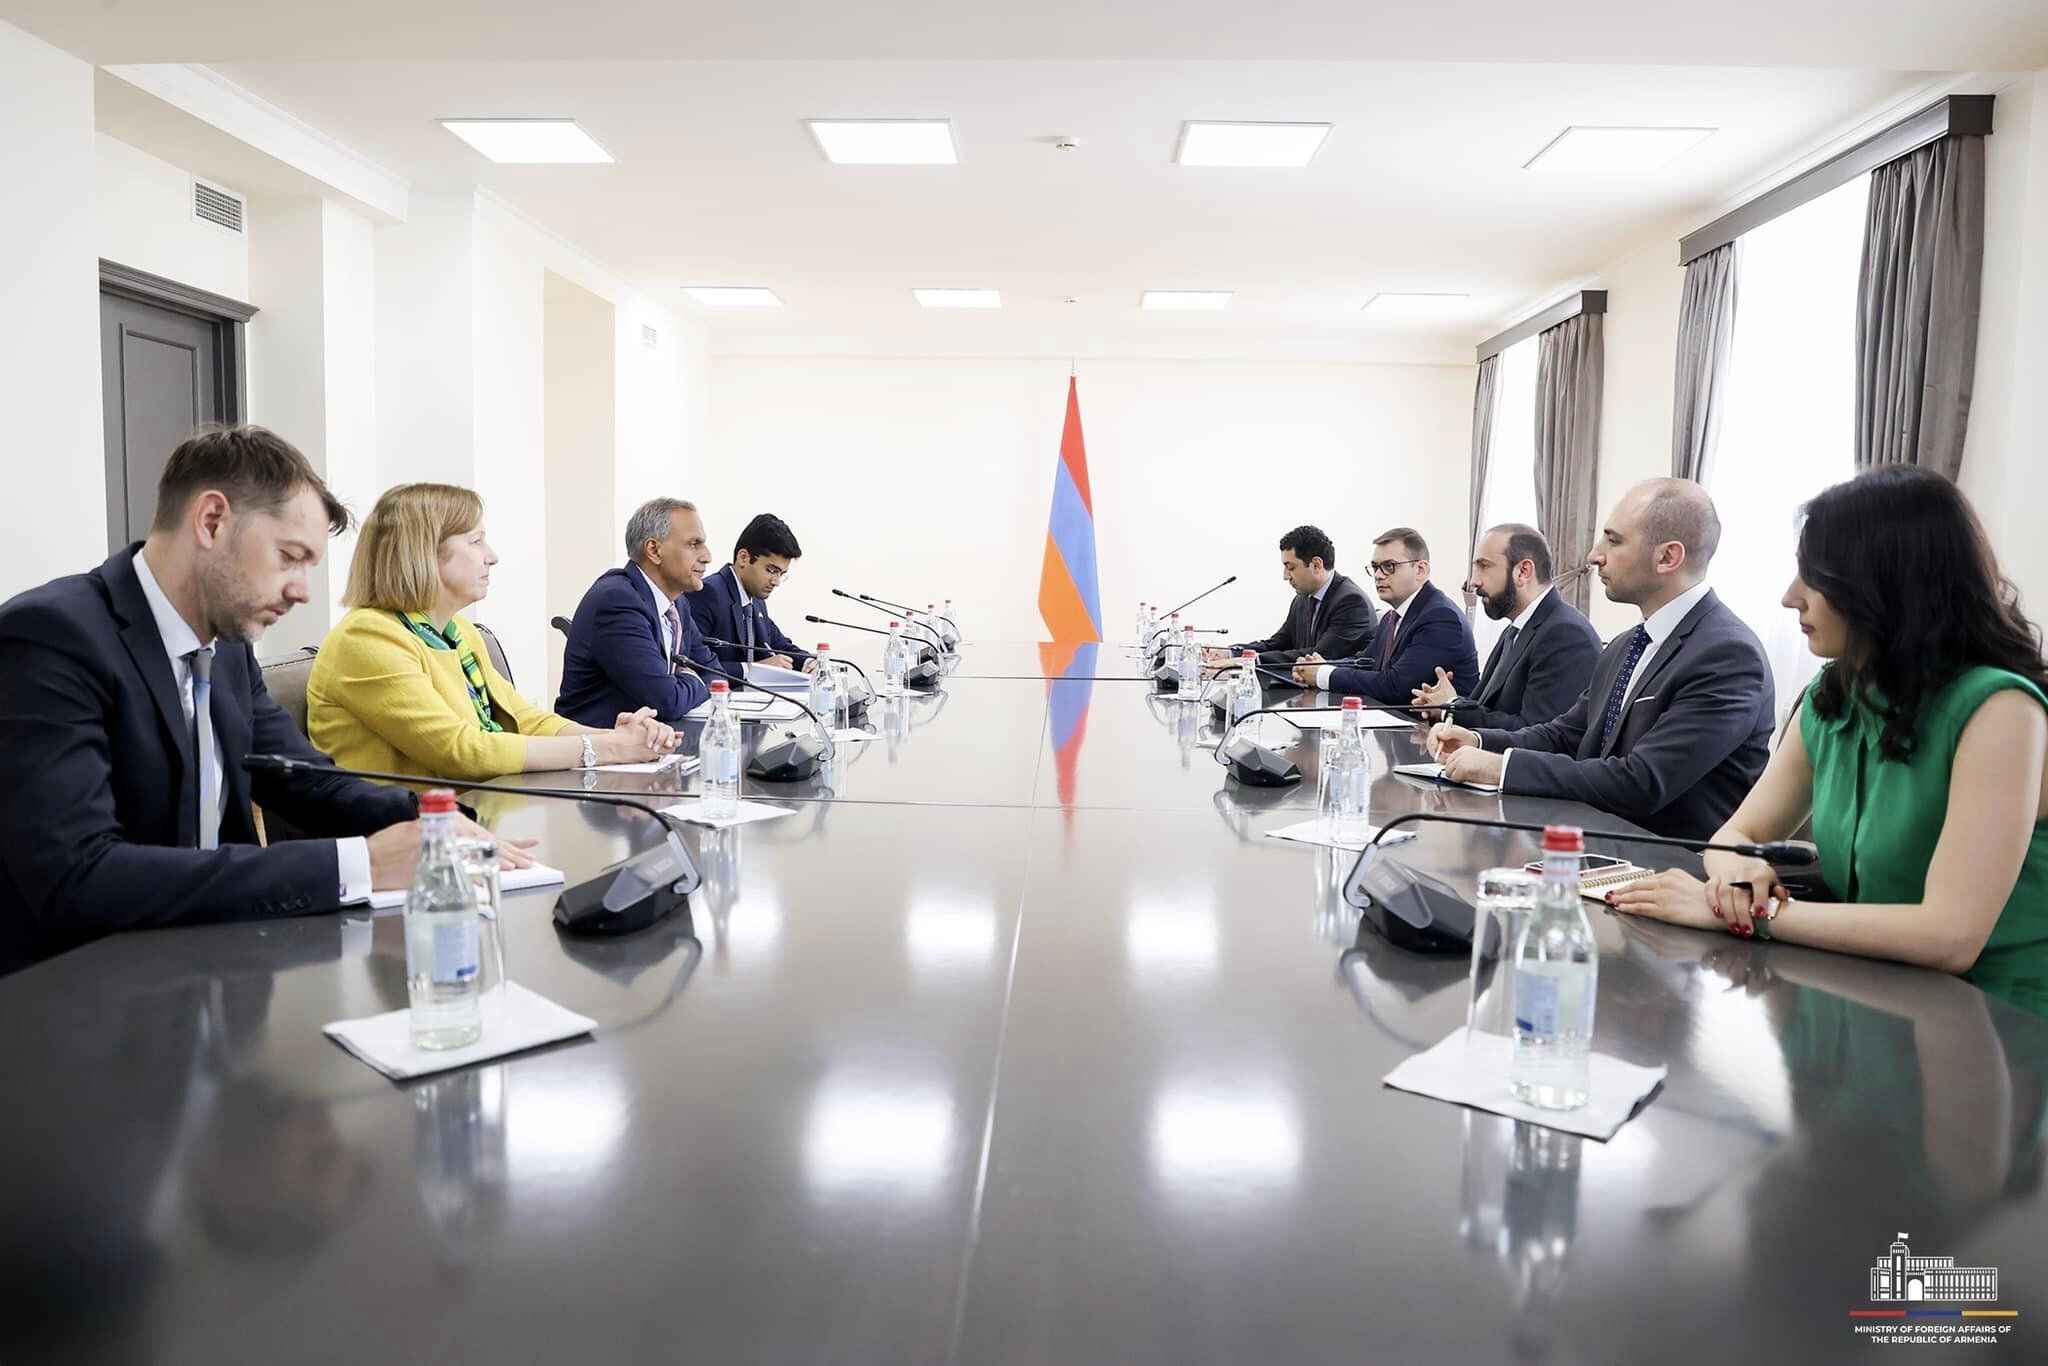 وزير الخارجية الأرمني آرارات ميرزويان يستقبل نائب وزير الخارجية الأمريكي للإدارة والموارد ريتشارد فيرما وبحث التعاون